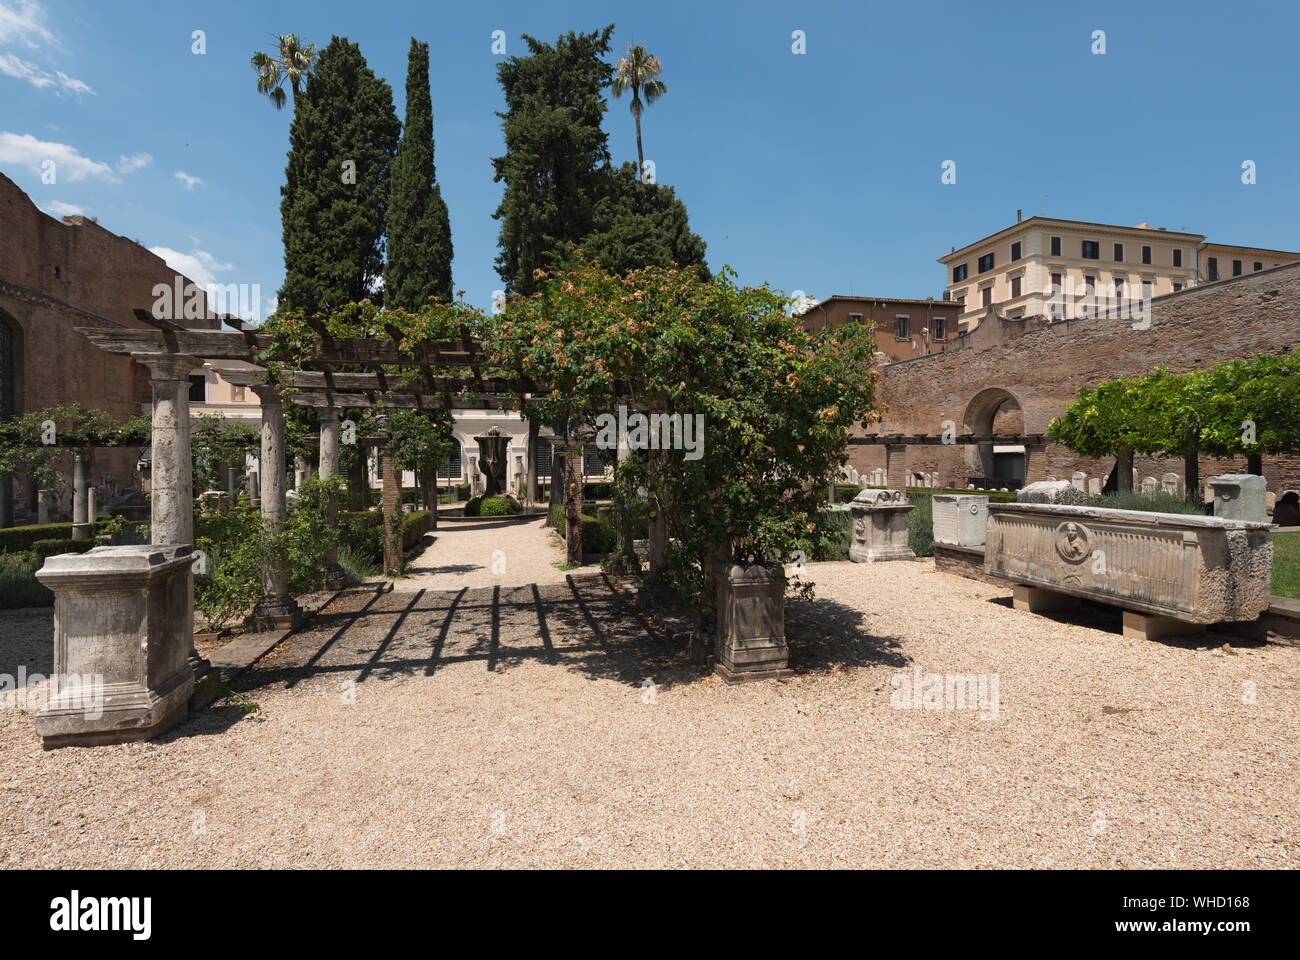 Jardin du Musée National de Rome et des bains de Dioclétien, Rome, Italie Banque D'Images